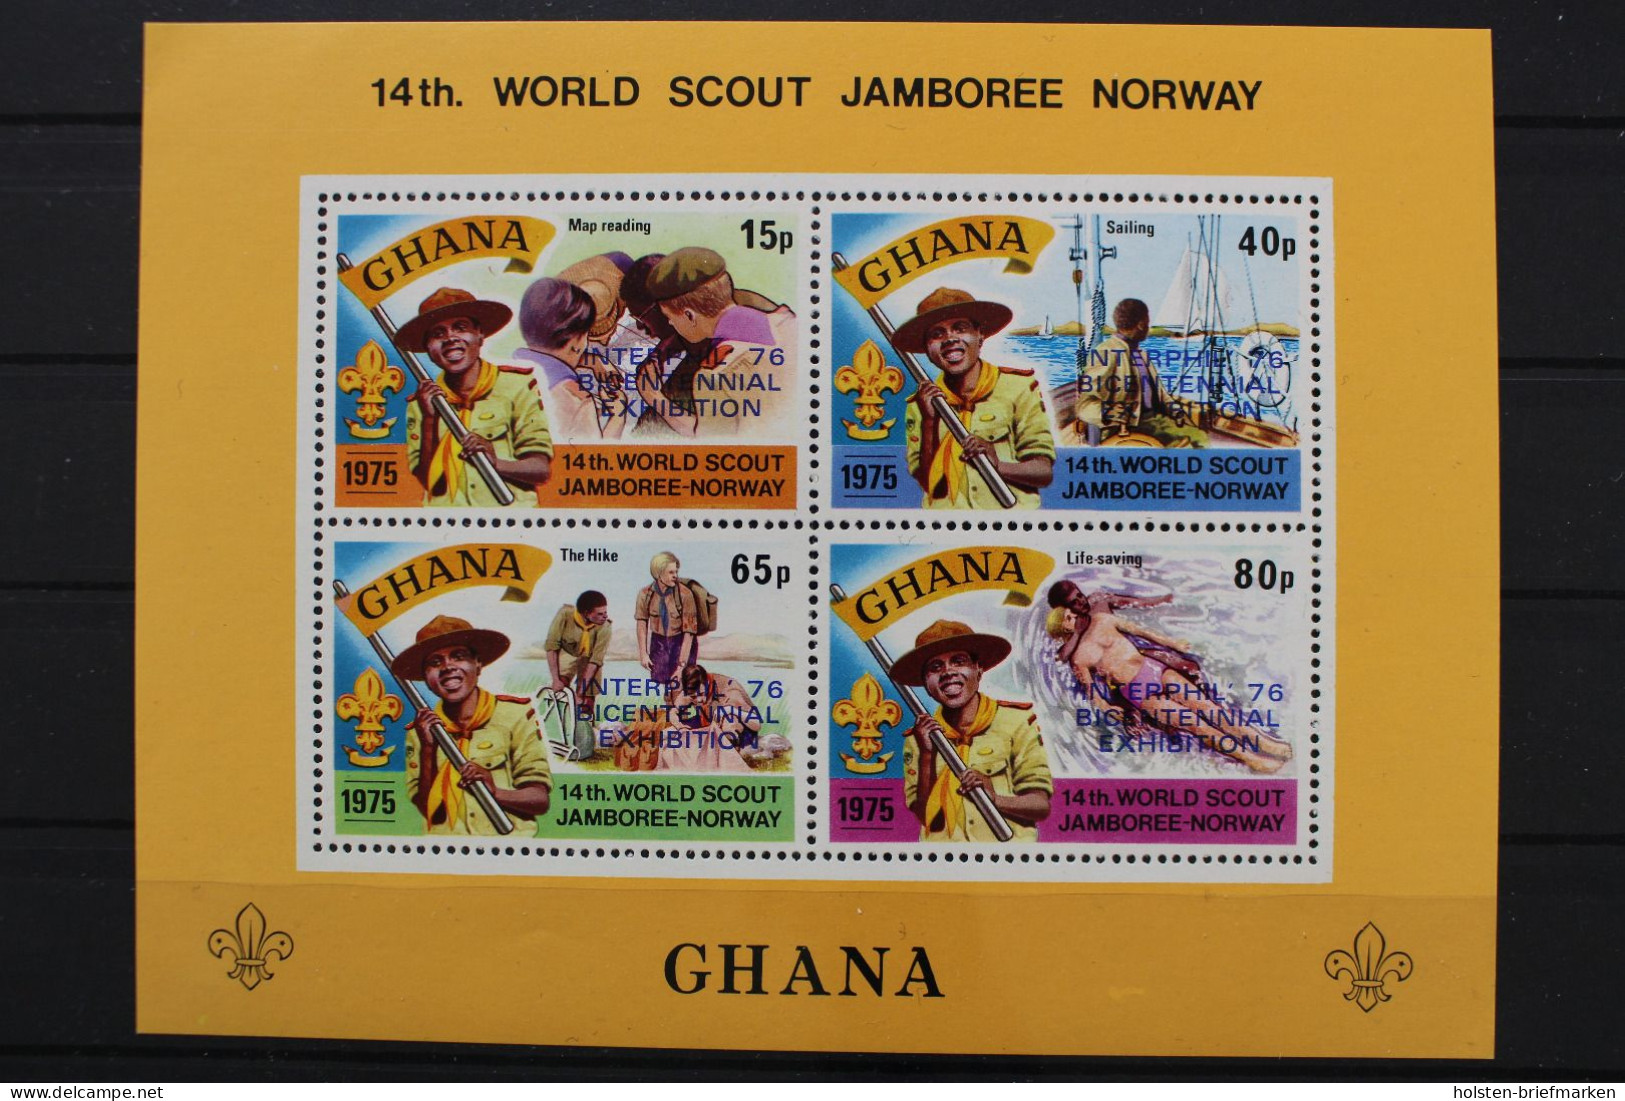 Ghana, MiNr. Block 62 A, Postfrisch - Ghana (1957-...)